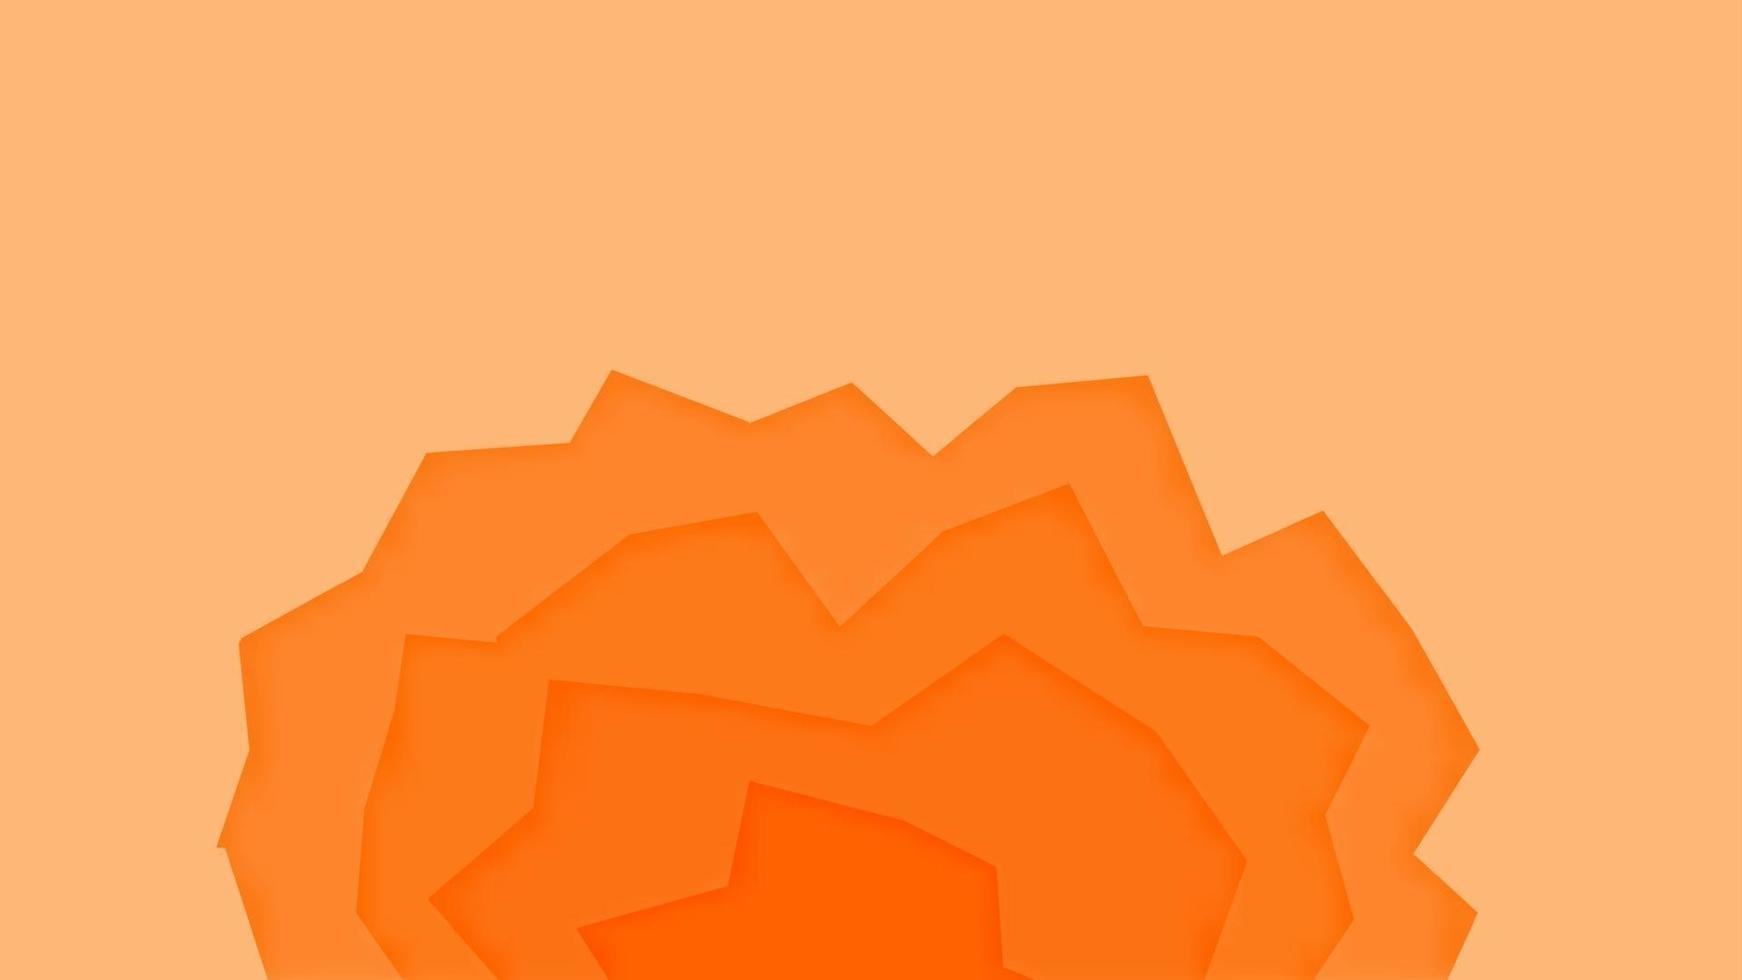 Resumen de fondo de corte de papel naranja con degradado de sombra papercut vector